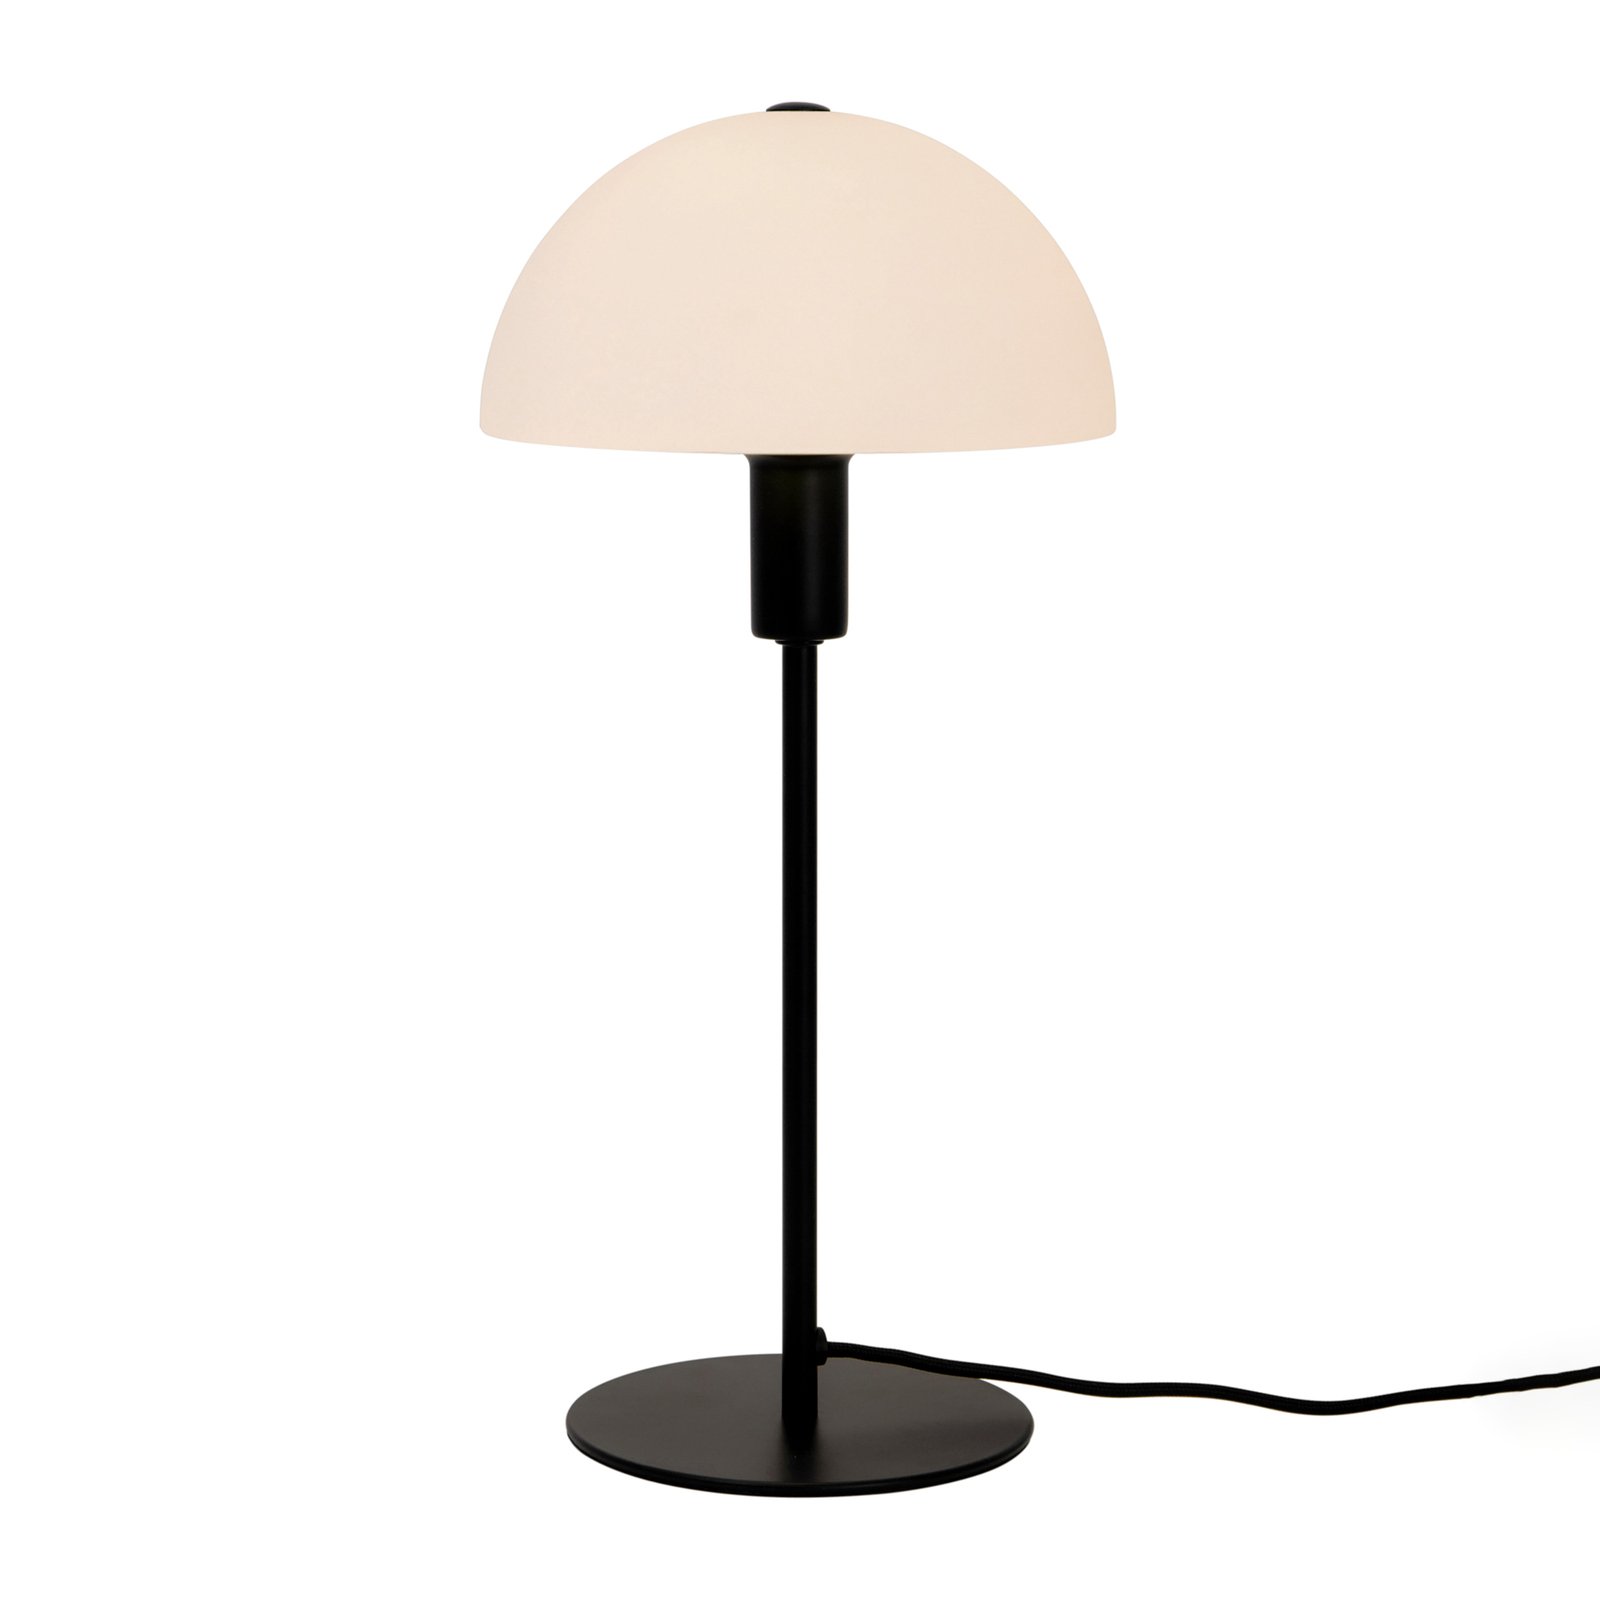 Ellen stolna lampa sa staklenim sjenilom, crna